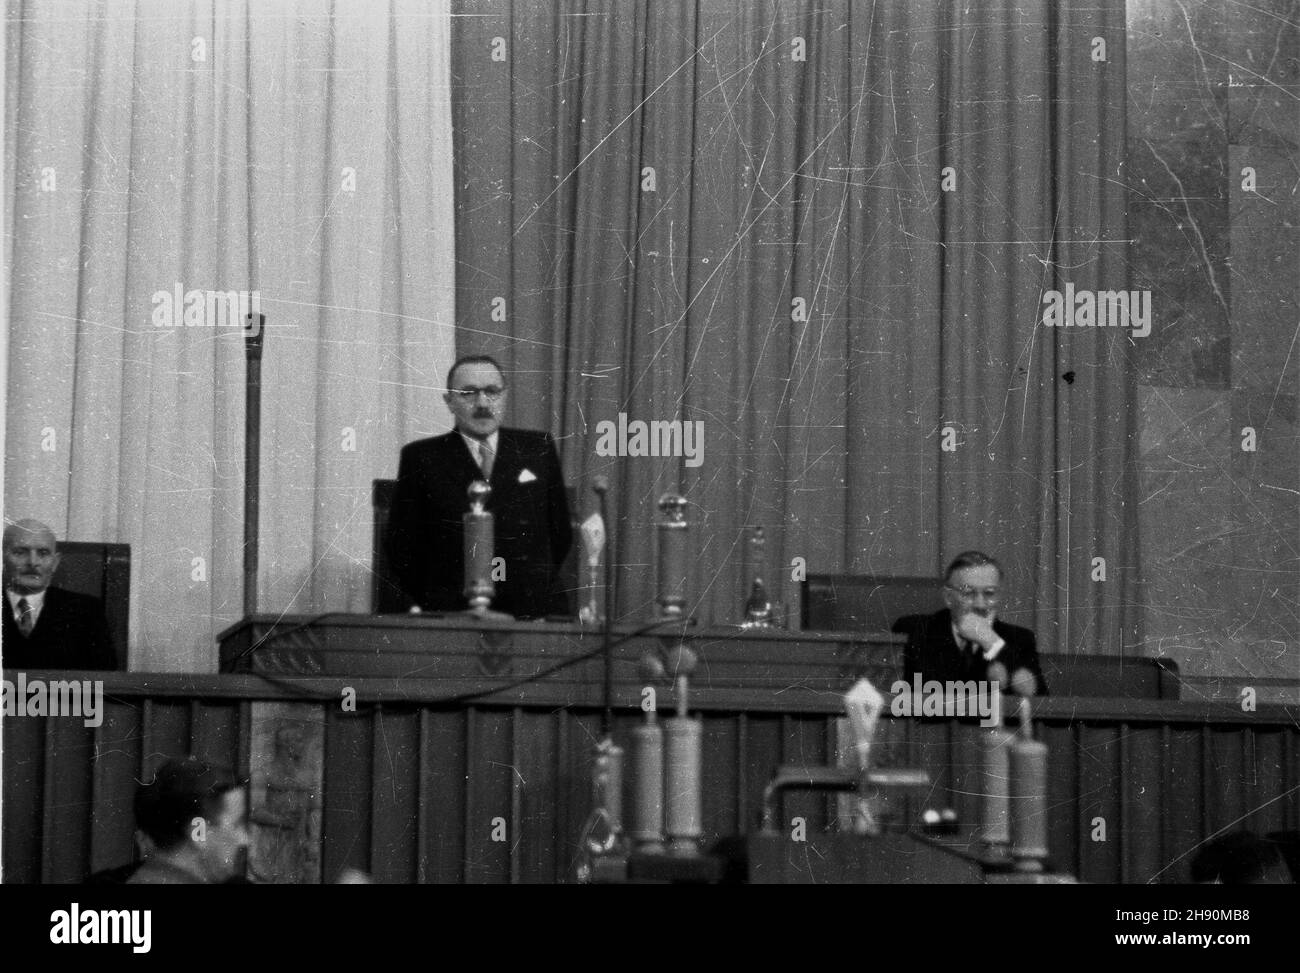 Warszawa, 1947-02-04. Pierwsze posiedzenie Sejmu Ustawodawczego. Nz. prezydent Krajowej Rady Narodowej Boles³aw Bierut otwiera sesjê. Z boków wiceprzewodnicz¹cy KRN: z lewej Stanis³aw Szwalbe, z prawej Wac³aw Barcikowski. bb/gr  PAP/Jerzy Baranowski      Warsaw, Feb. 4, 1947. The first Sejm meeting. Pictured: the National Council President Boleslaw Bierut opens the session. On his left and right deputy Presidents Stanislaw Szwalbe and Waclaw Barcikowski.  bb/gr  PAP/Jerzy Baranowski Stock Photo